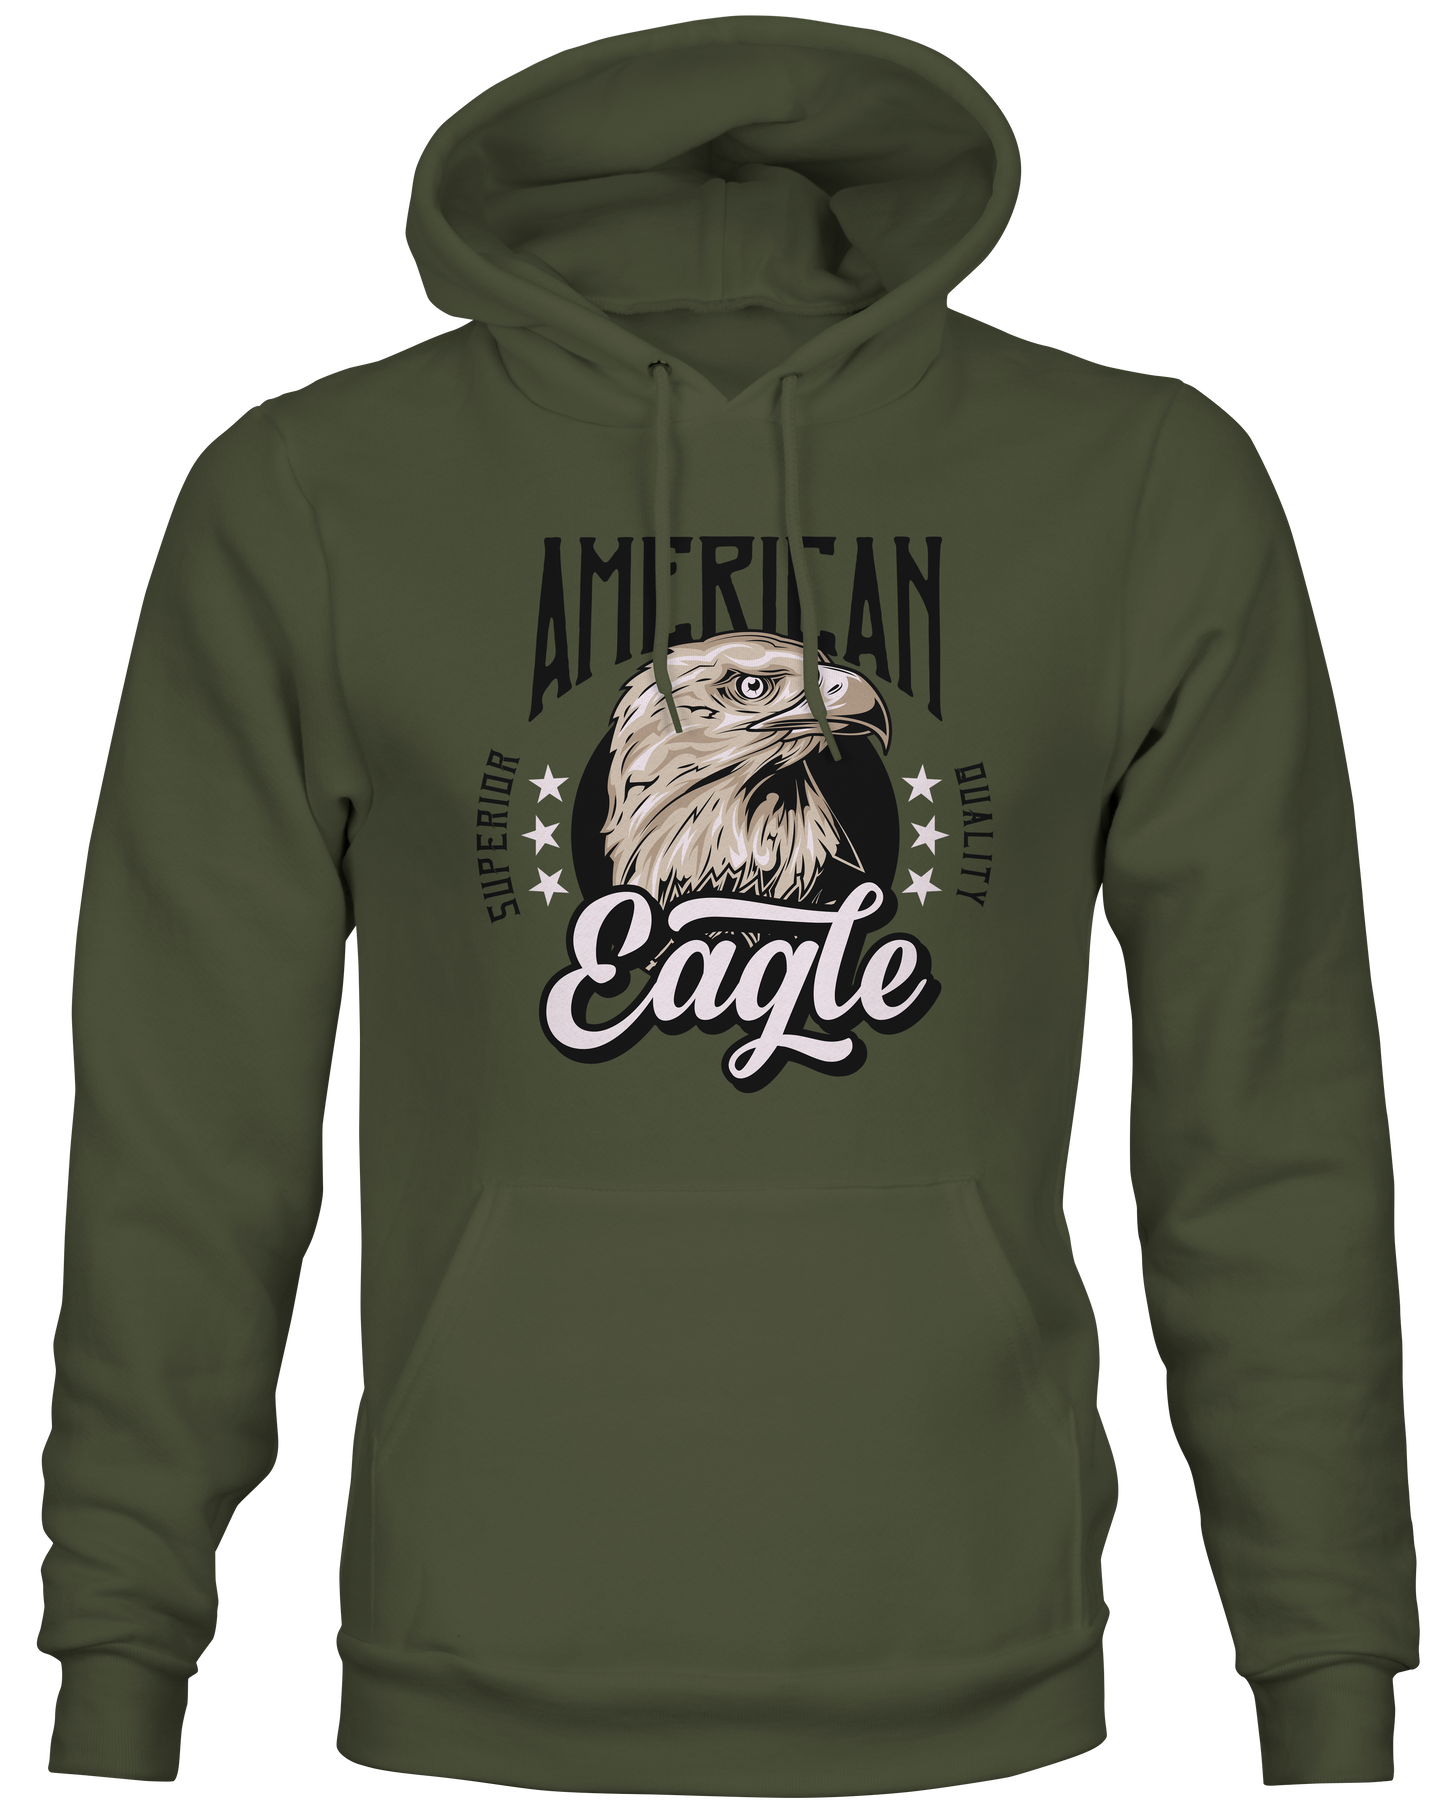 Military Green American Eagle Hoodie